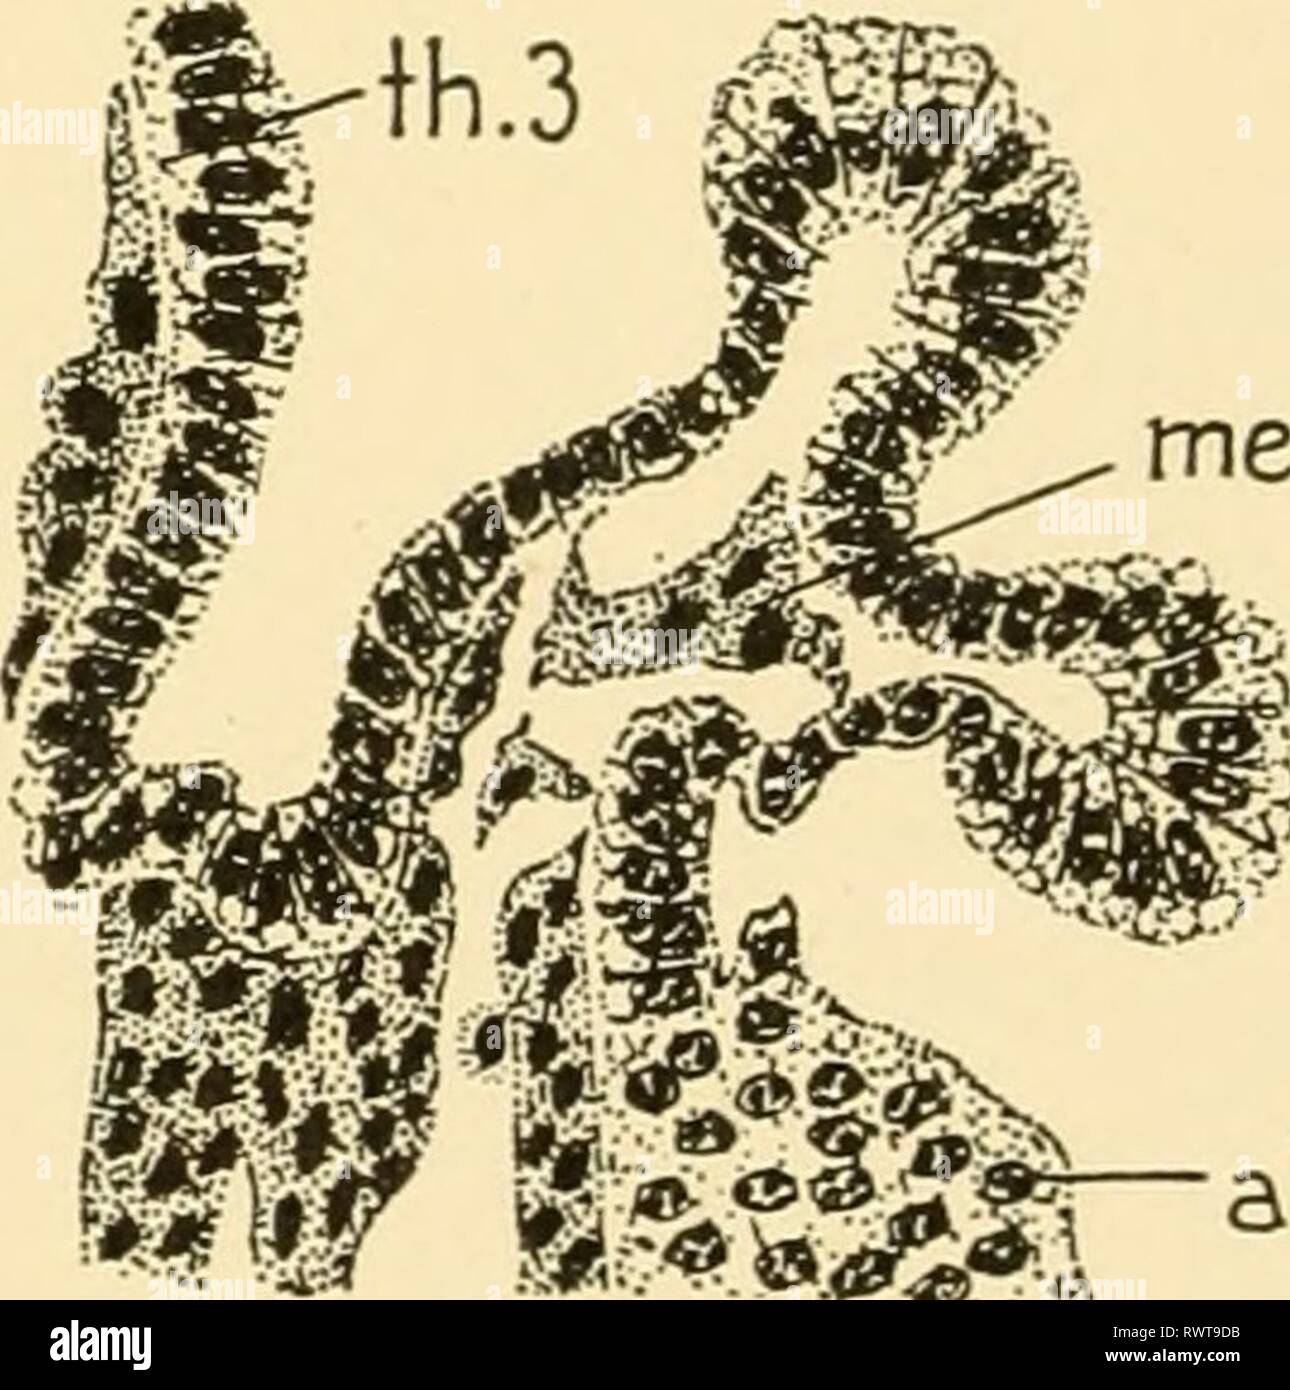 L'embryologie d'insectes et de myriapodes ; l'embryologie d'insectes et de myriapodes ; l'histoire du développement des insectes, mille-pattes, et de l'oeuf millepedes desposition [ !] embryologyofinse à couver à joha00Année : 1941 une paire d'invaginations profondes dirigée médialement surgit juste derrière la mandi- bles qui fusionnent avec les invaginations en forme de T pour former le tentorium. La face dorsale des bras surgissent après que tentorial des excroissances du tentorial antérieure des bras. L'apodèmes céphaliques mandibulaires surviennent à l'étape de 90 heures comme une paire de profonde invagina- tions près du milieu de la face interne de la base de la mandibule. Le Lowe Banque D'Images